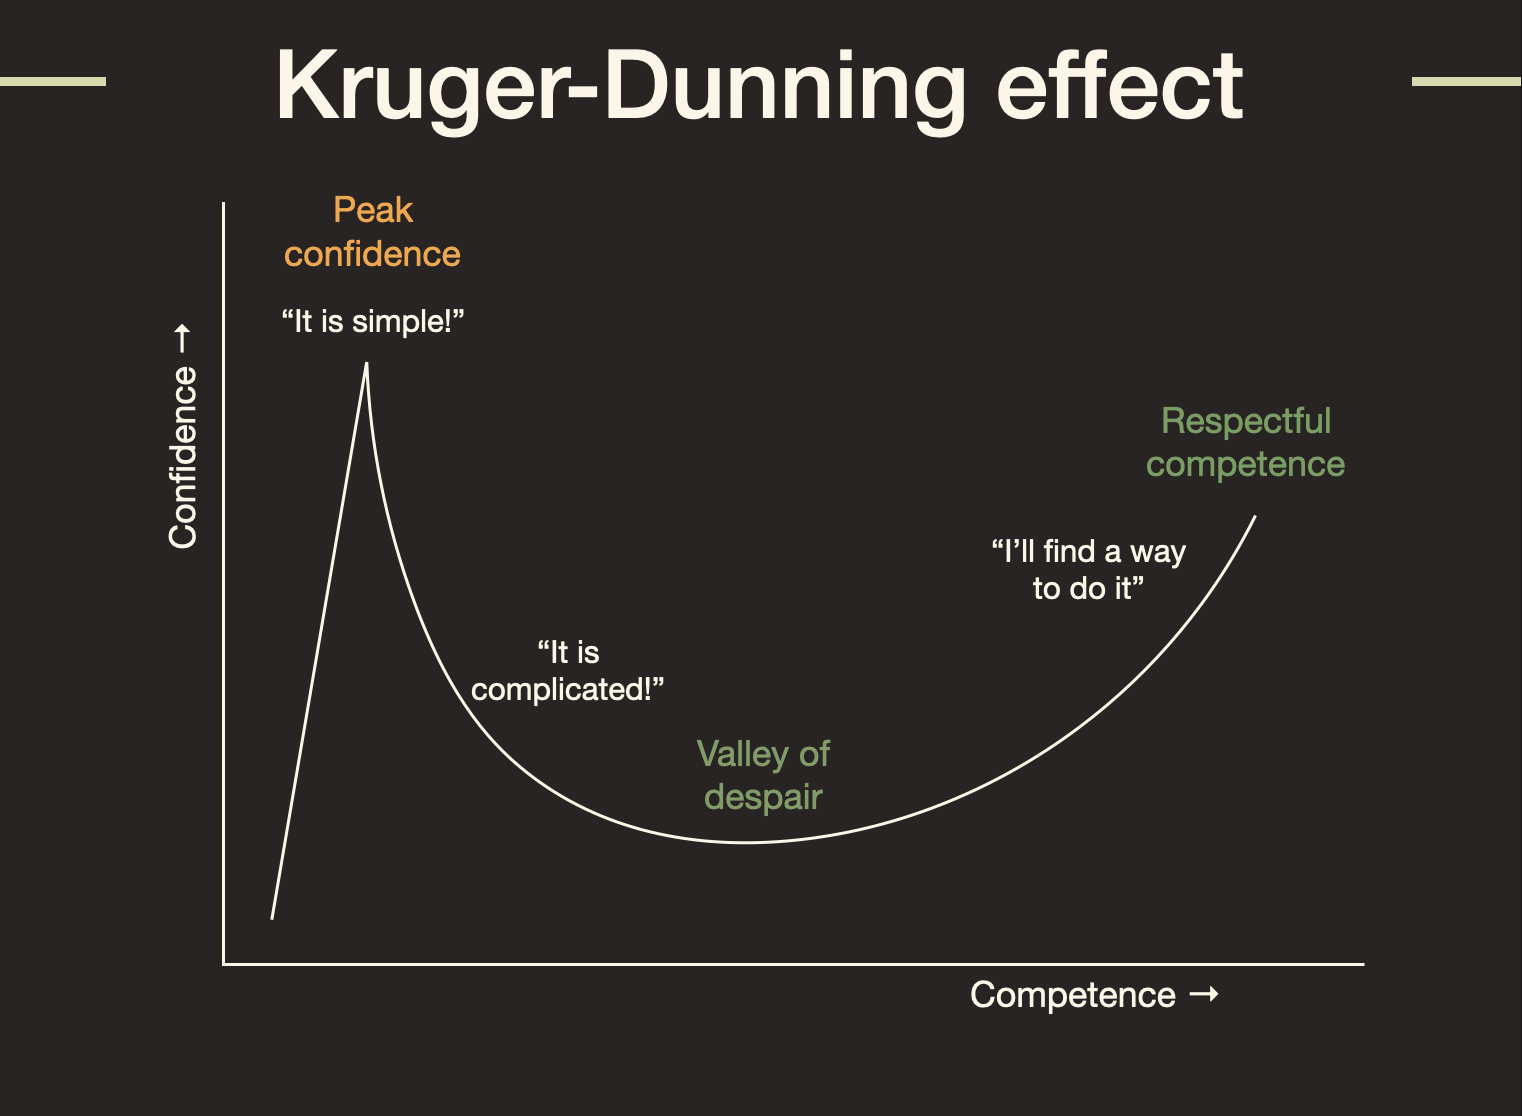 Kruger-Dunning effect